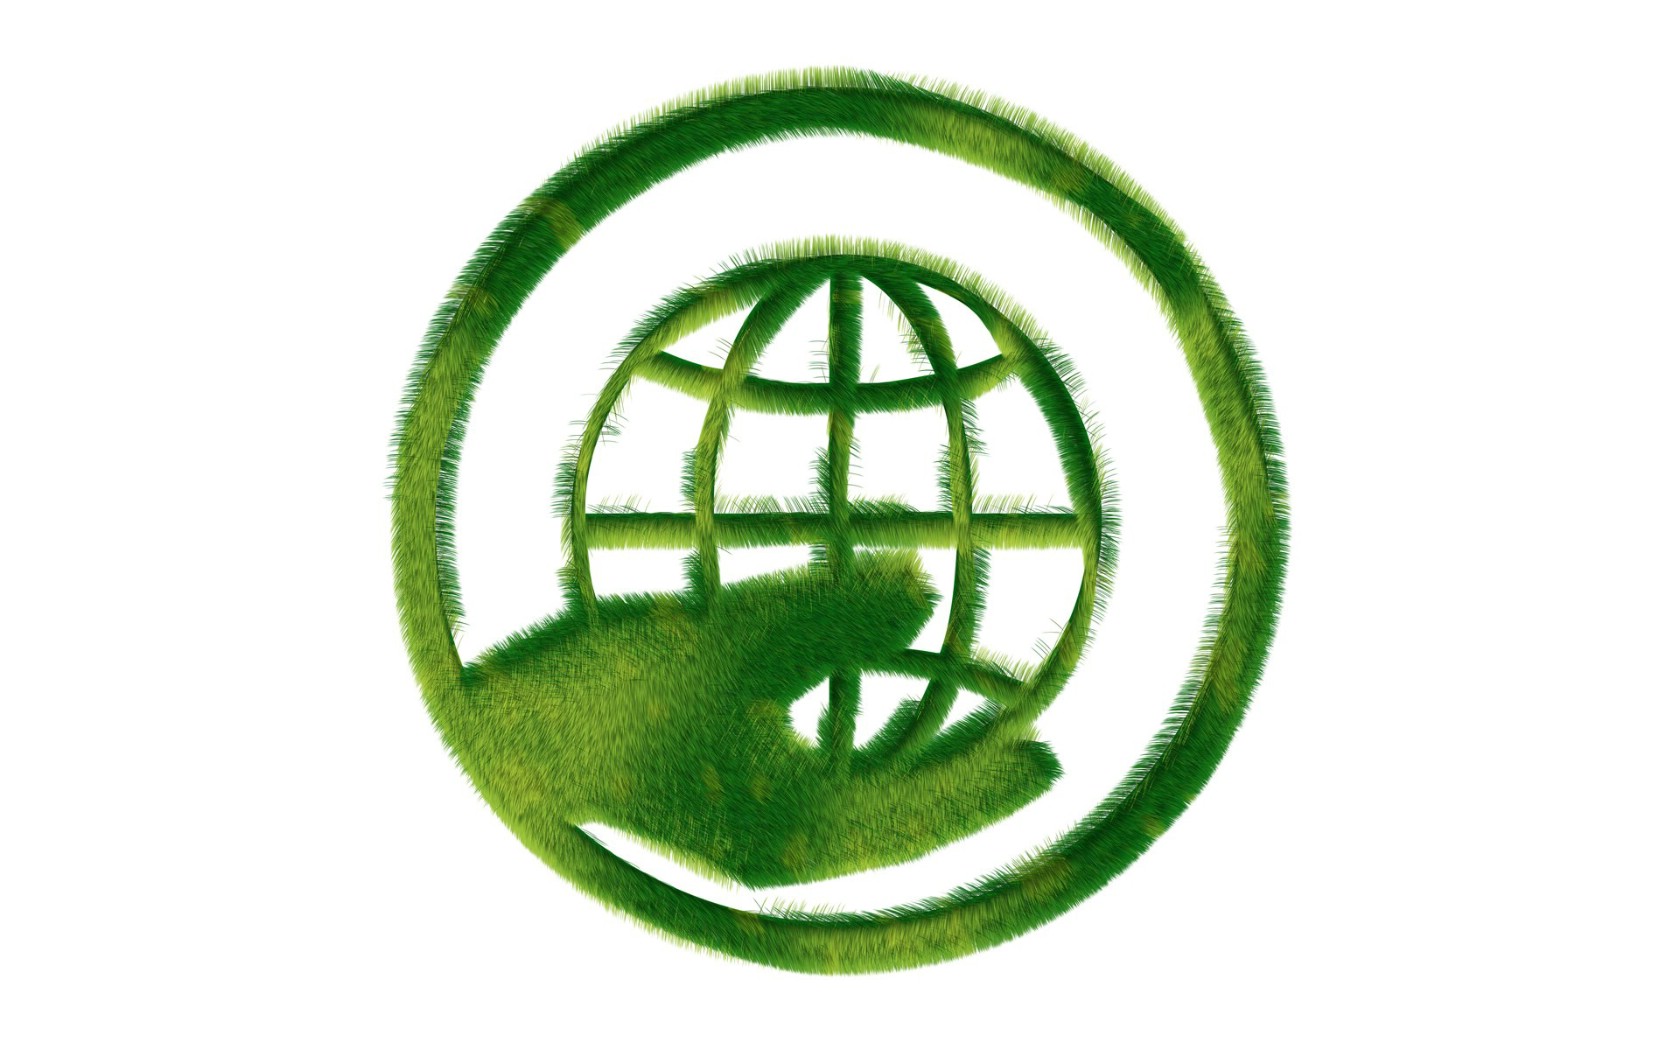 壁纸1680x1050 地球生态 草地组成的绿色环保标志图片 1920 1200壁纸 绿色和平环保标志-循环利用壁纸 绿色和平环保标志-循环利用图片 绿色和平环保标志-循环利用素材 插画壁纸 插画图库 插画图片素材桌面壁纸